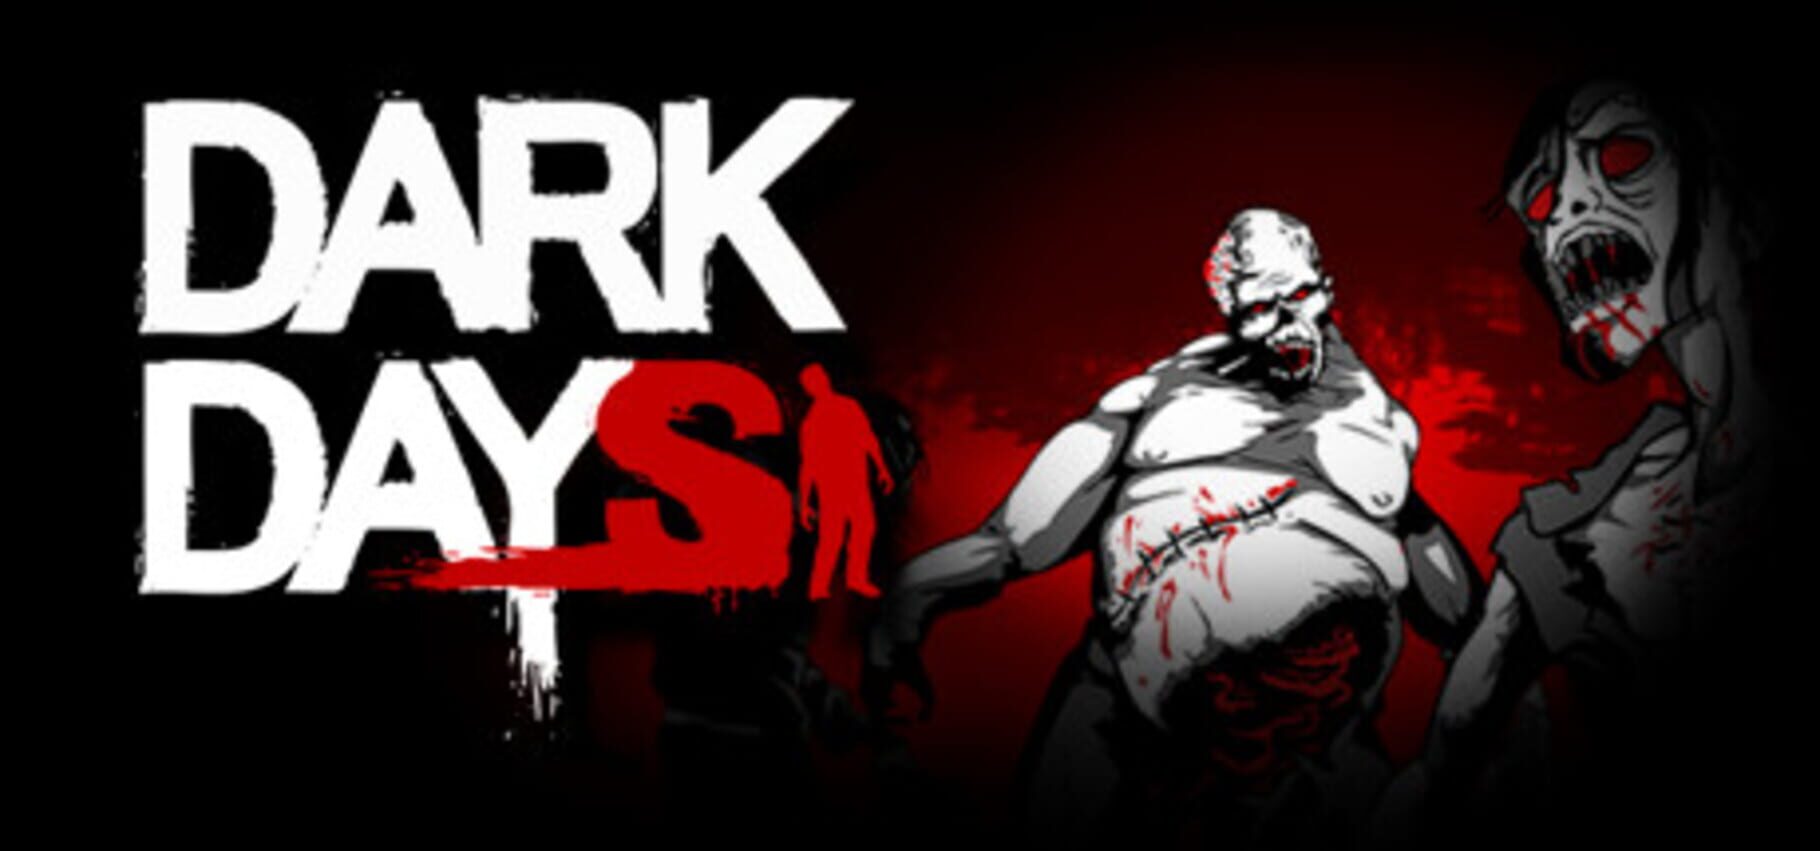 Дарк дейс. Dark Days. Dark Days (PC game on Steam). Дарк заказы. Dark Days logo.